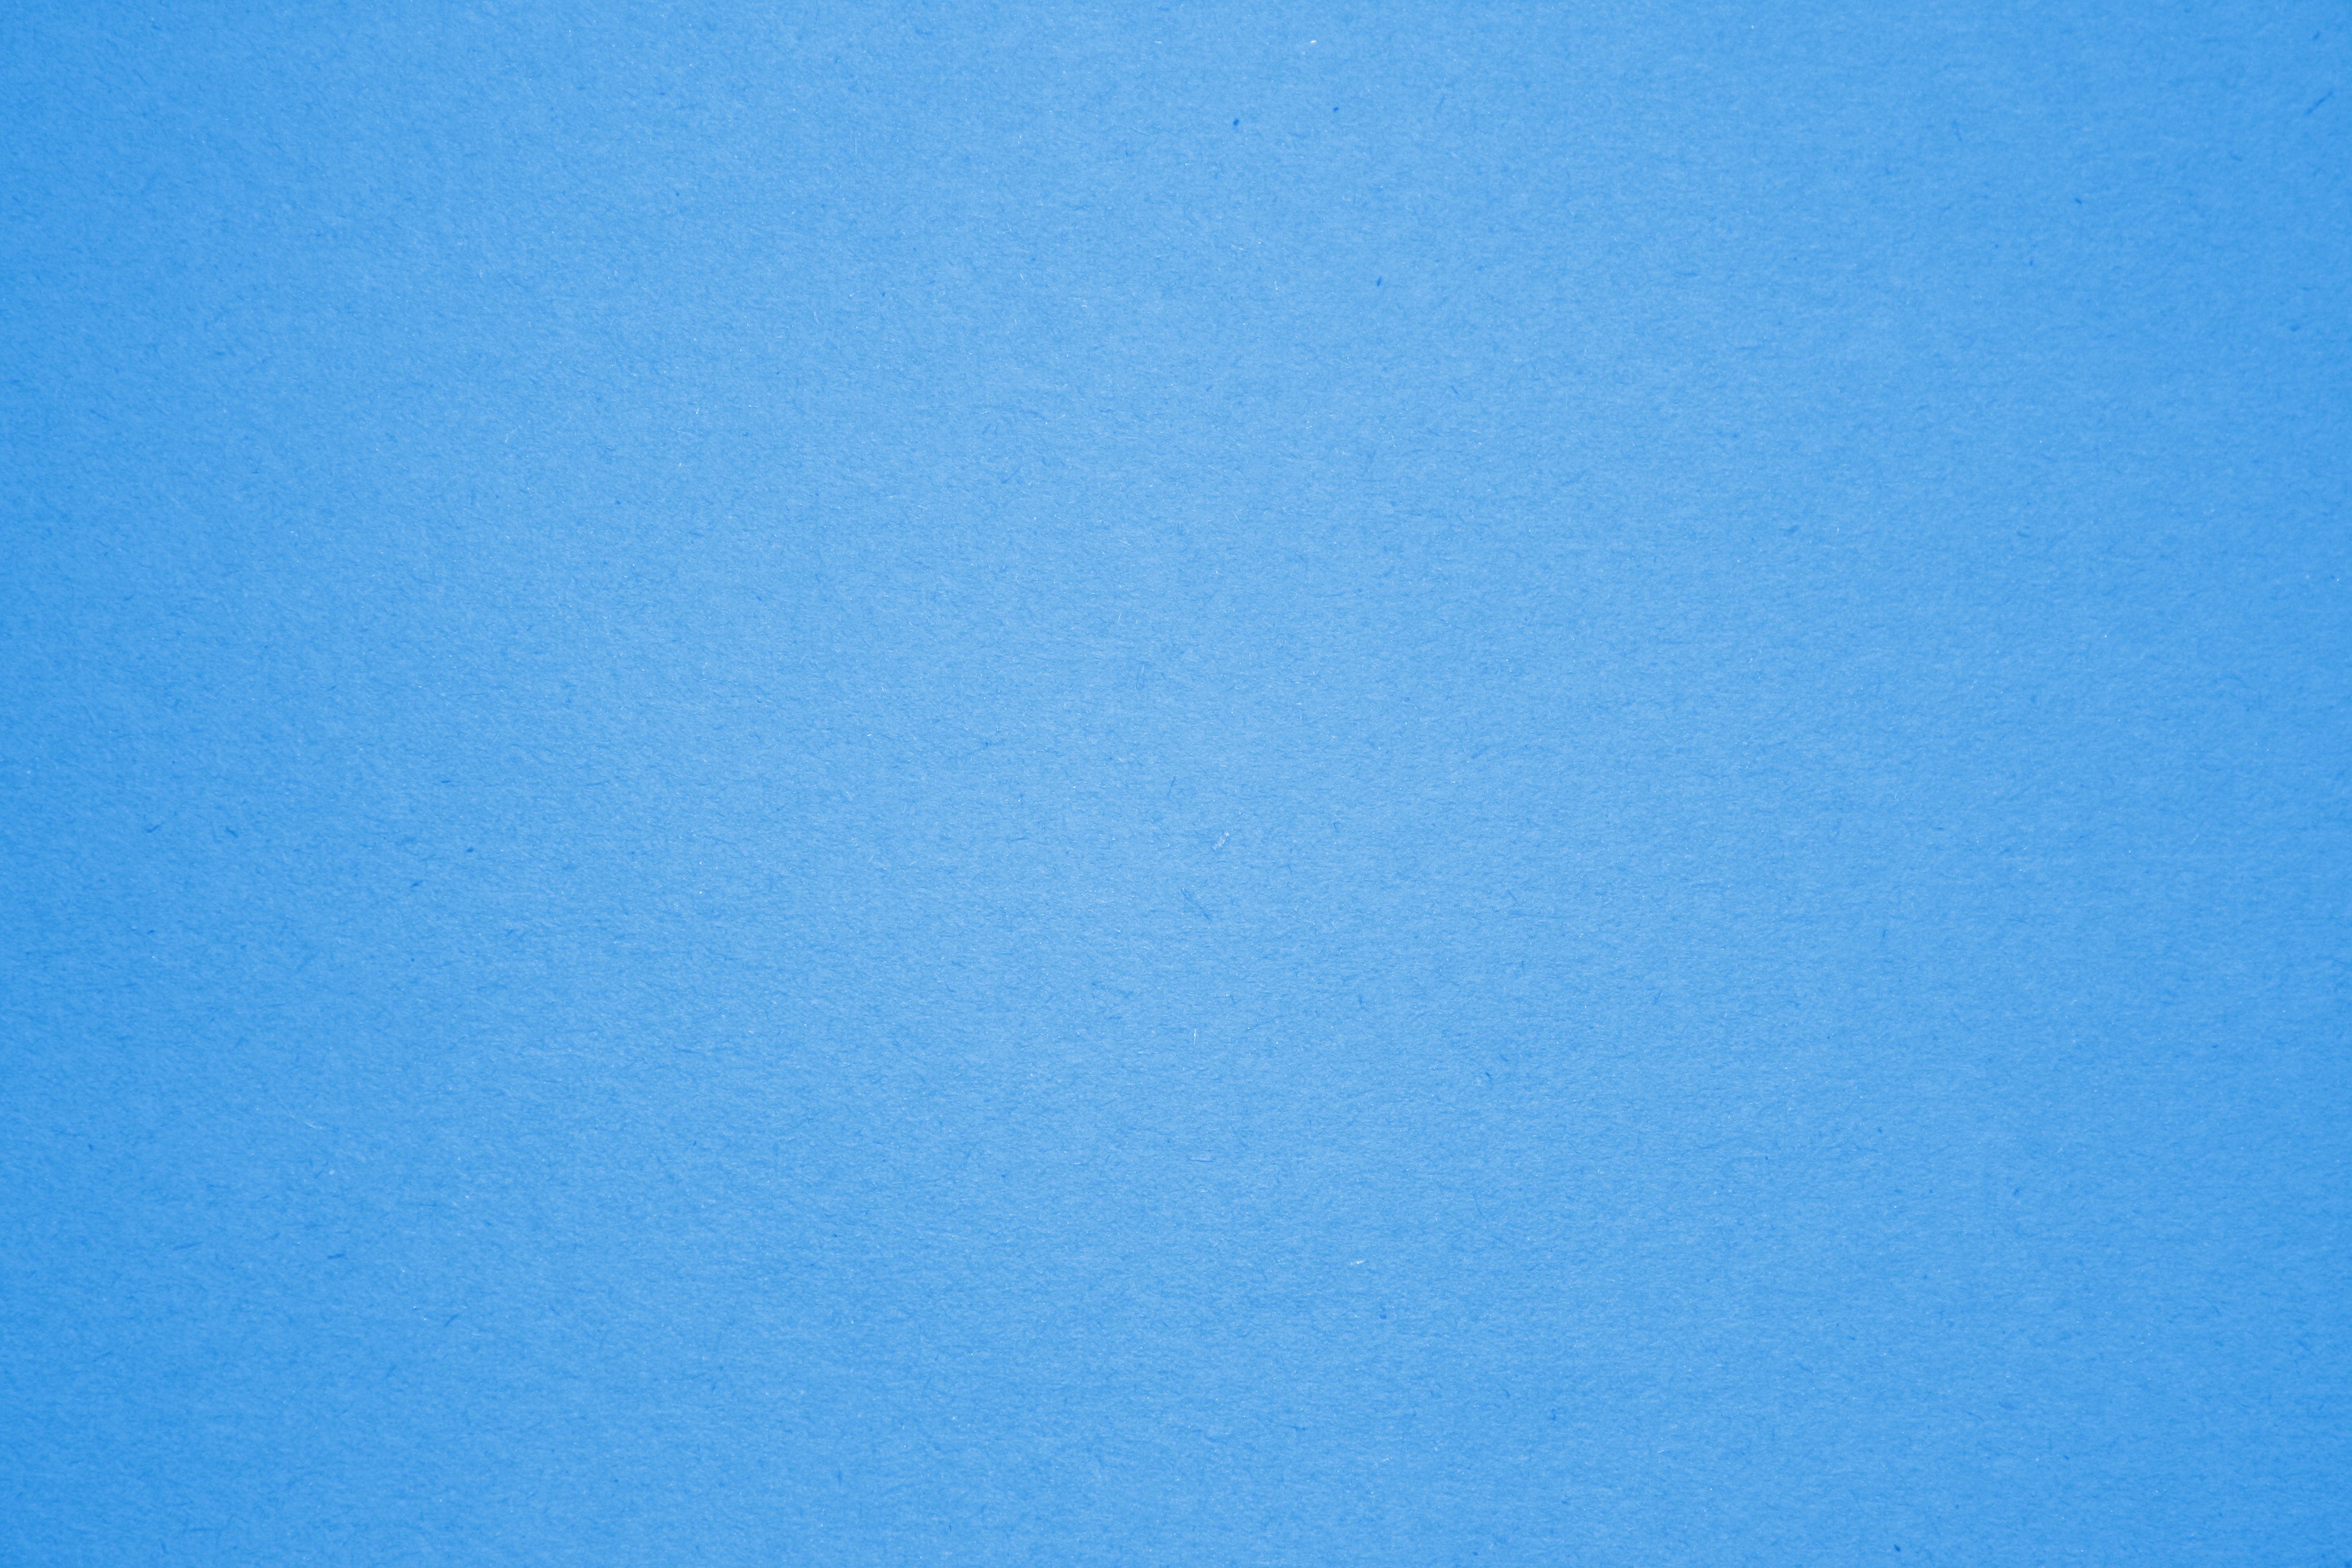 Blue Construction Paper Texture